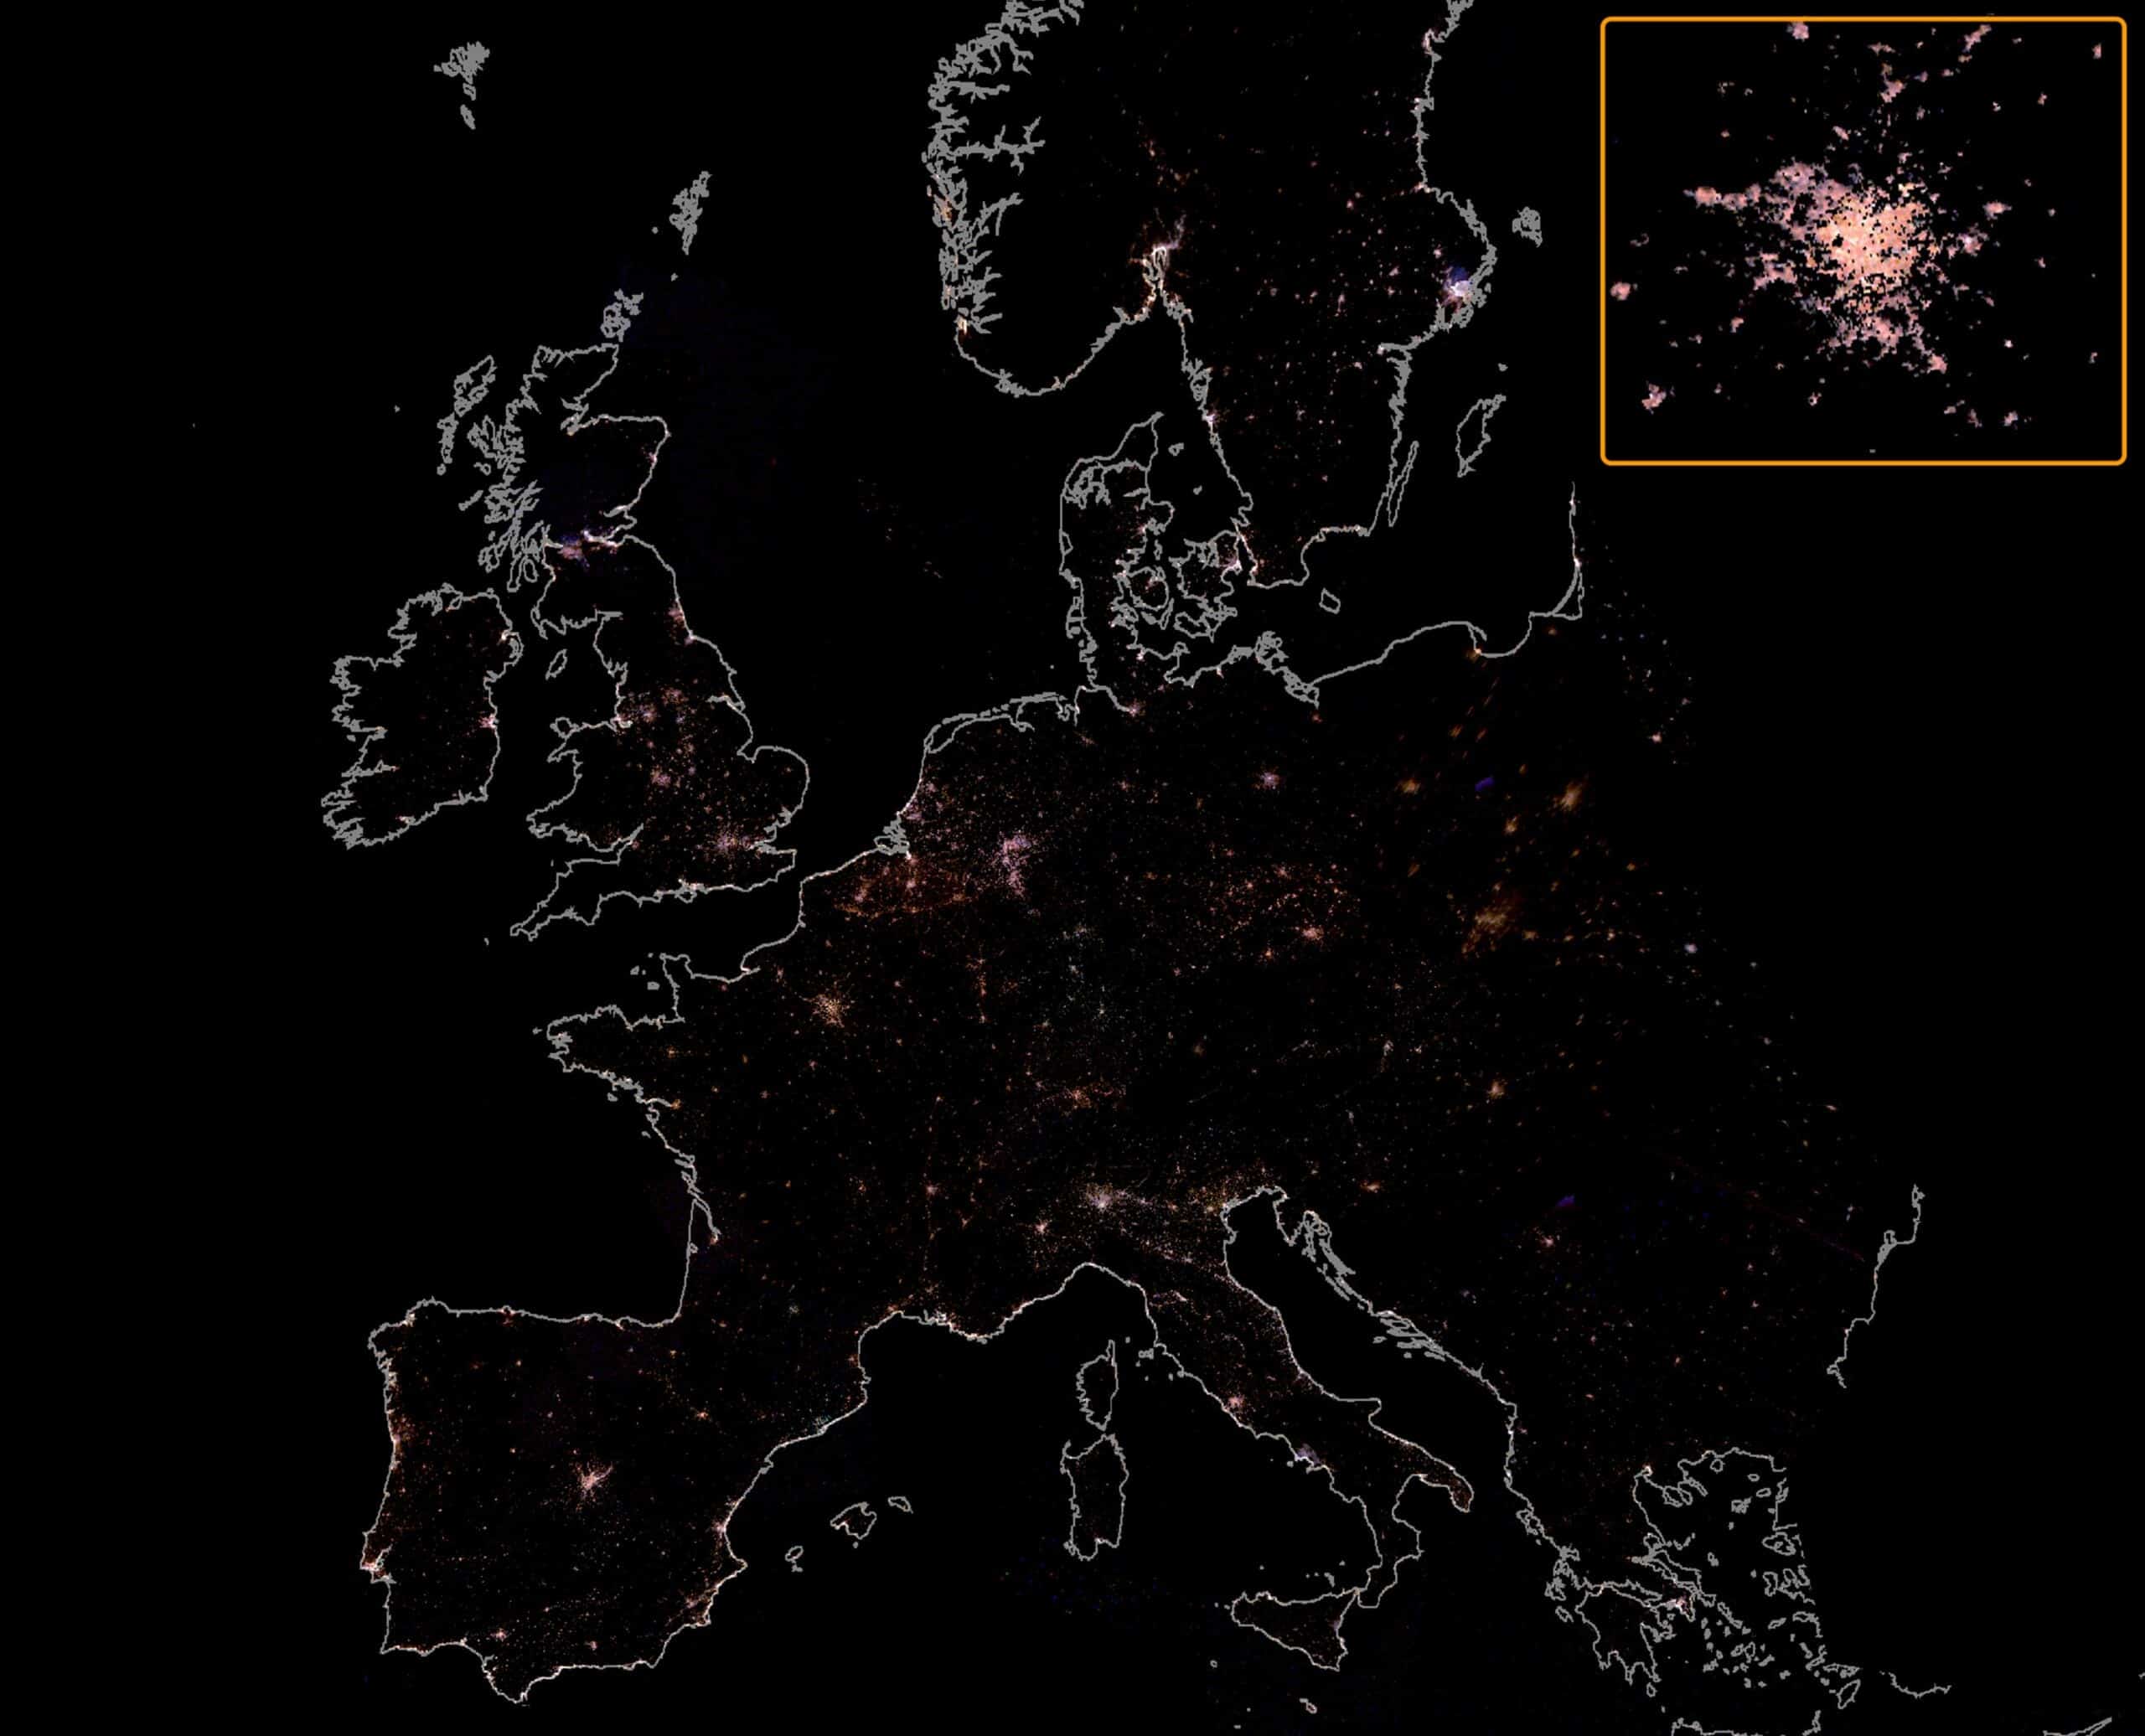 صورة من محطة الفضاء الدولية لأوروبا في الليل